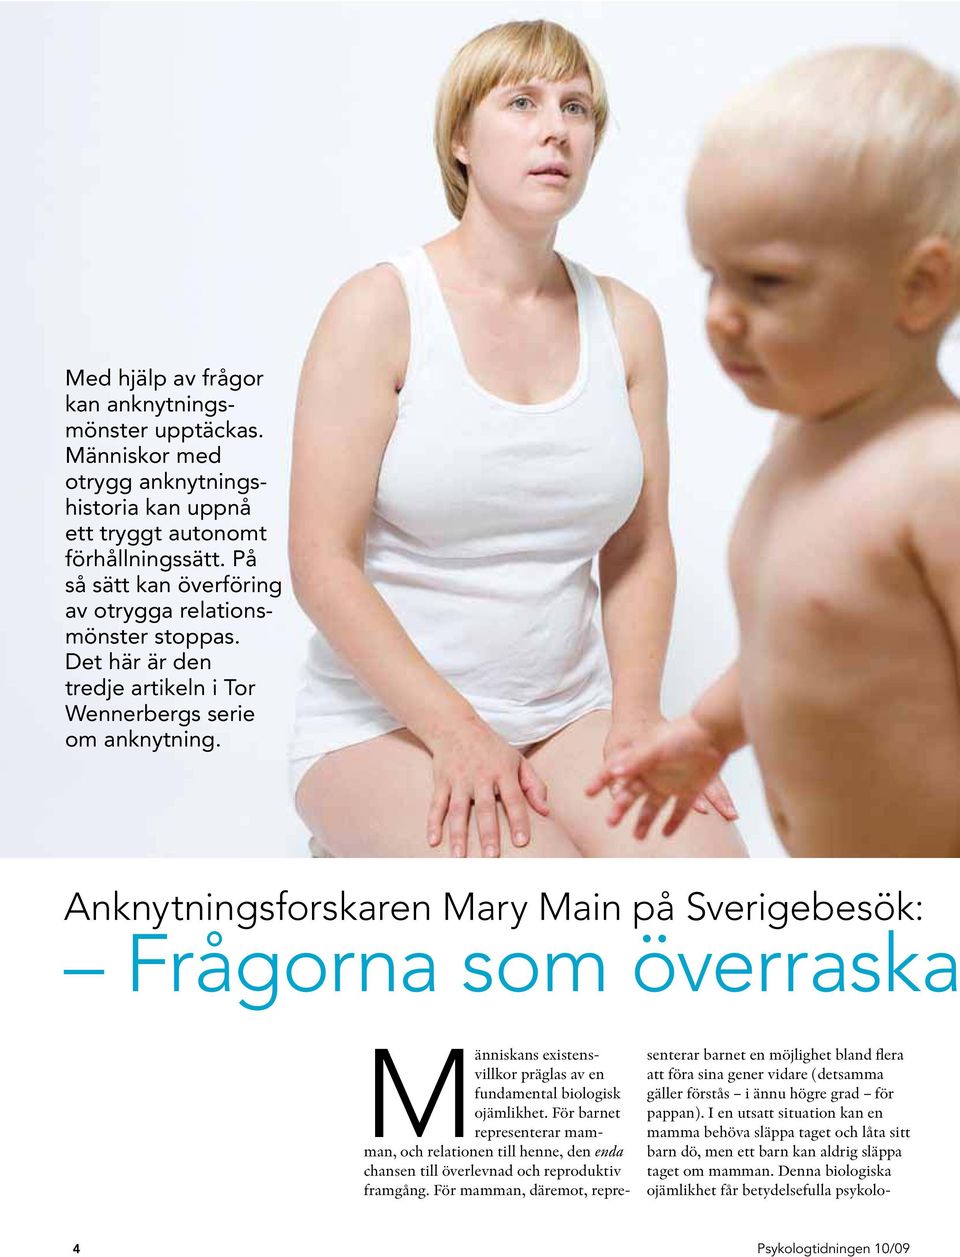 Anknytningsforskaren Mary Main på Sverigebesök: Frågorna som överraska Människans existensvillkor präglas av en fundamental biologisk ojämlikhet.